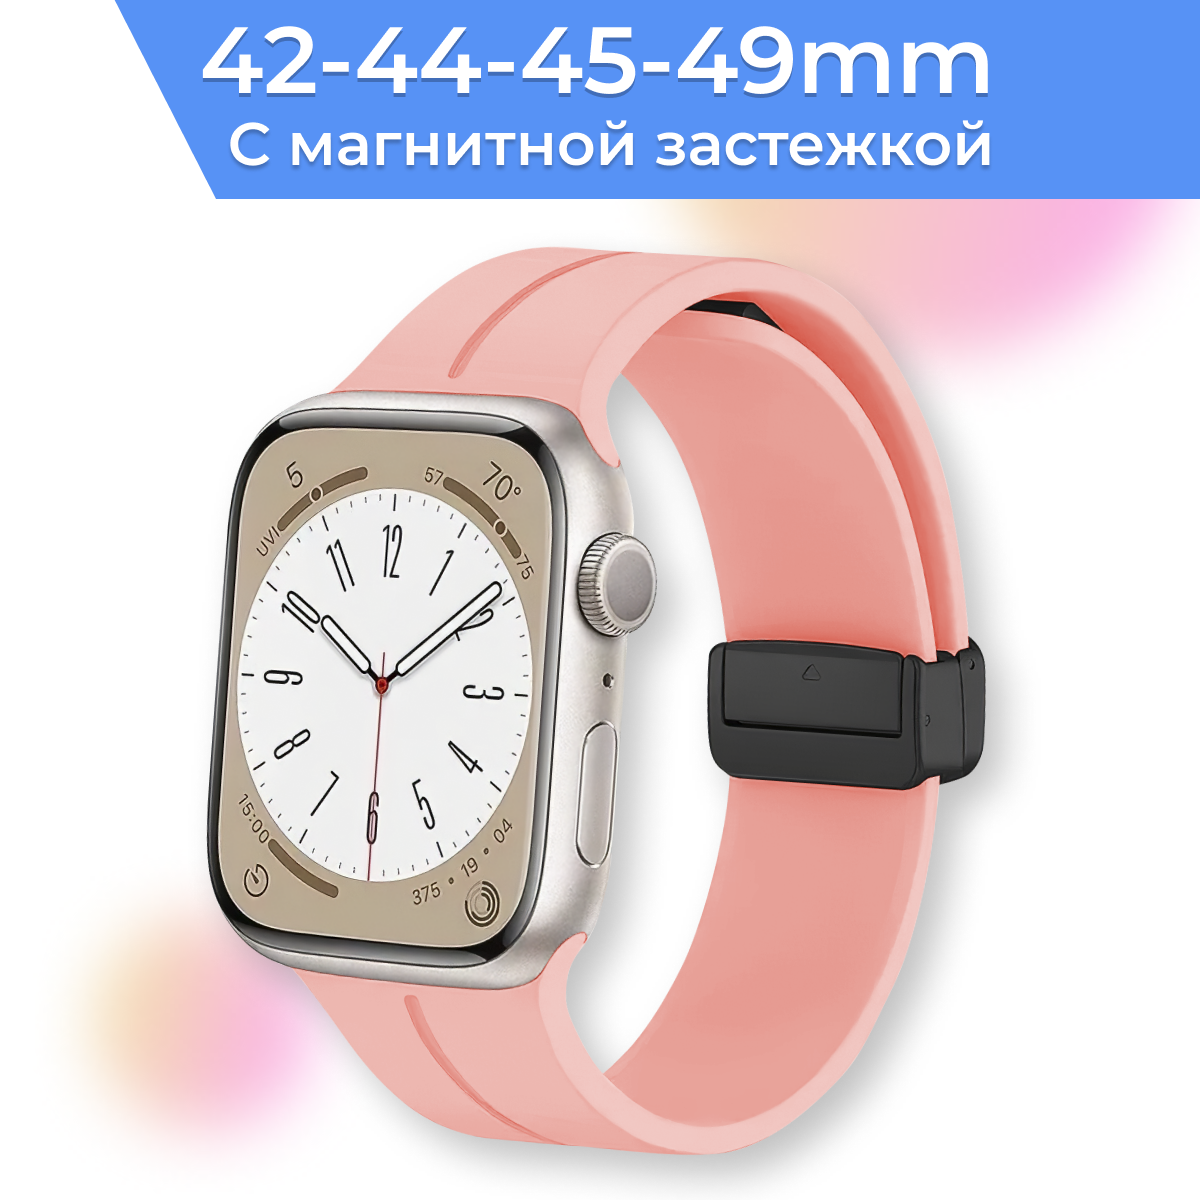 Силиконовый ремешок с магнитной застежкой для умных часов Apple Watch 42-42-45-49 mm / Сменный браслет для смарт часов Эпл Вотч 1-8 SE серии / Черный